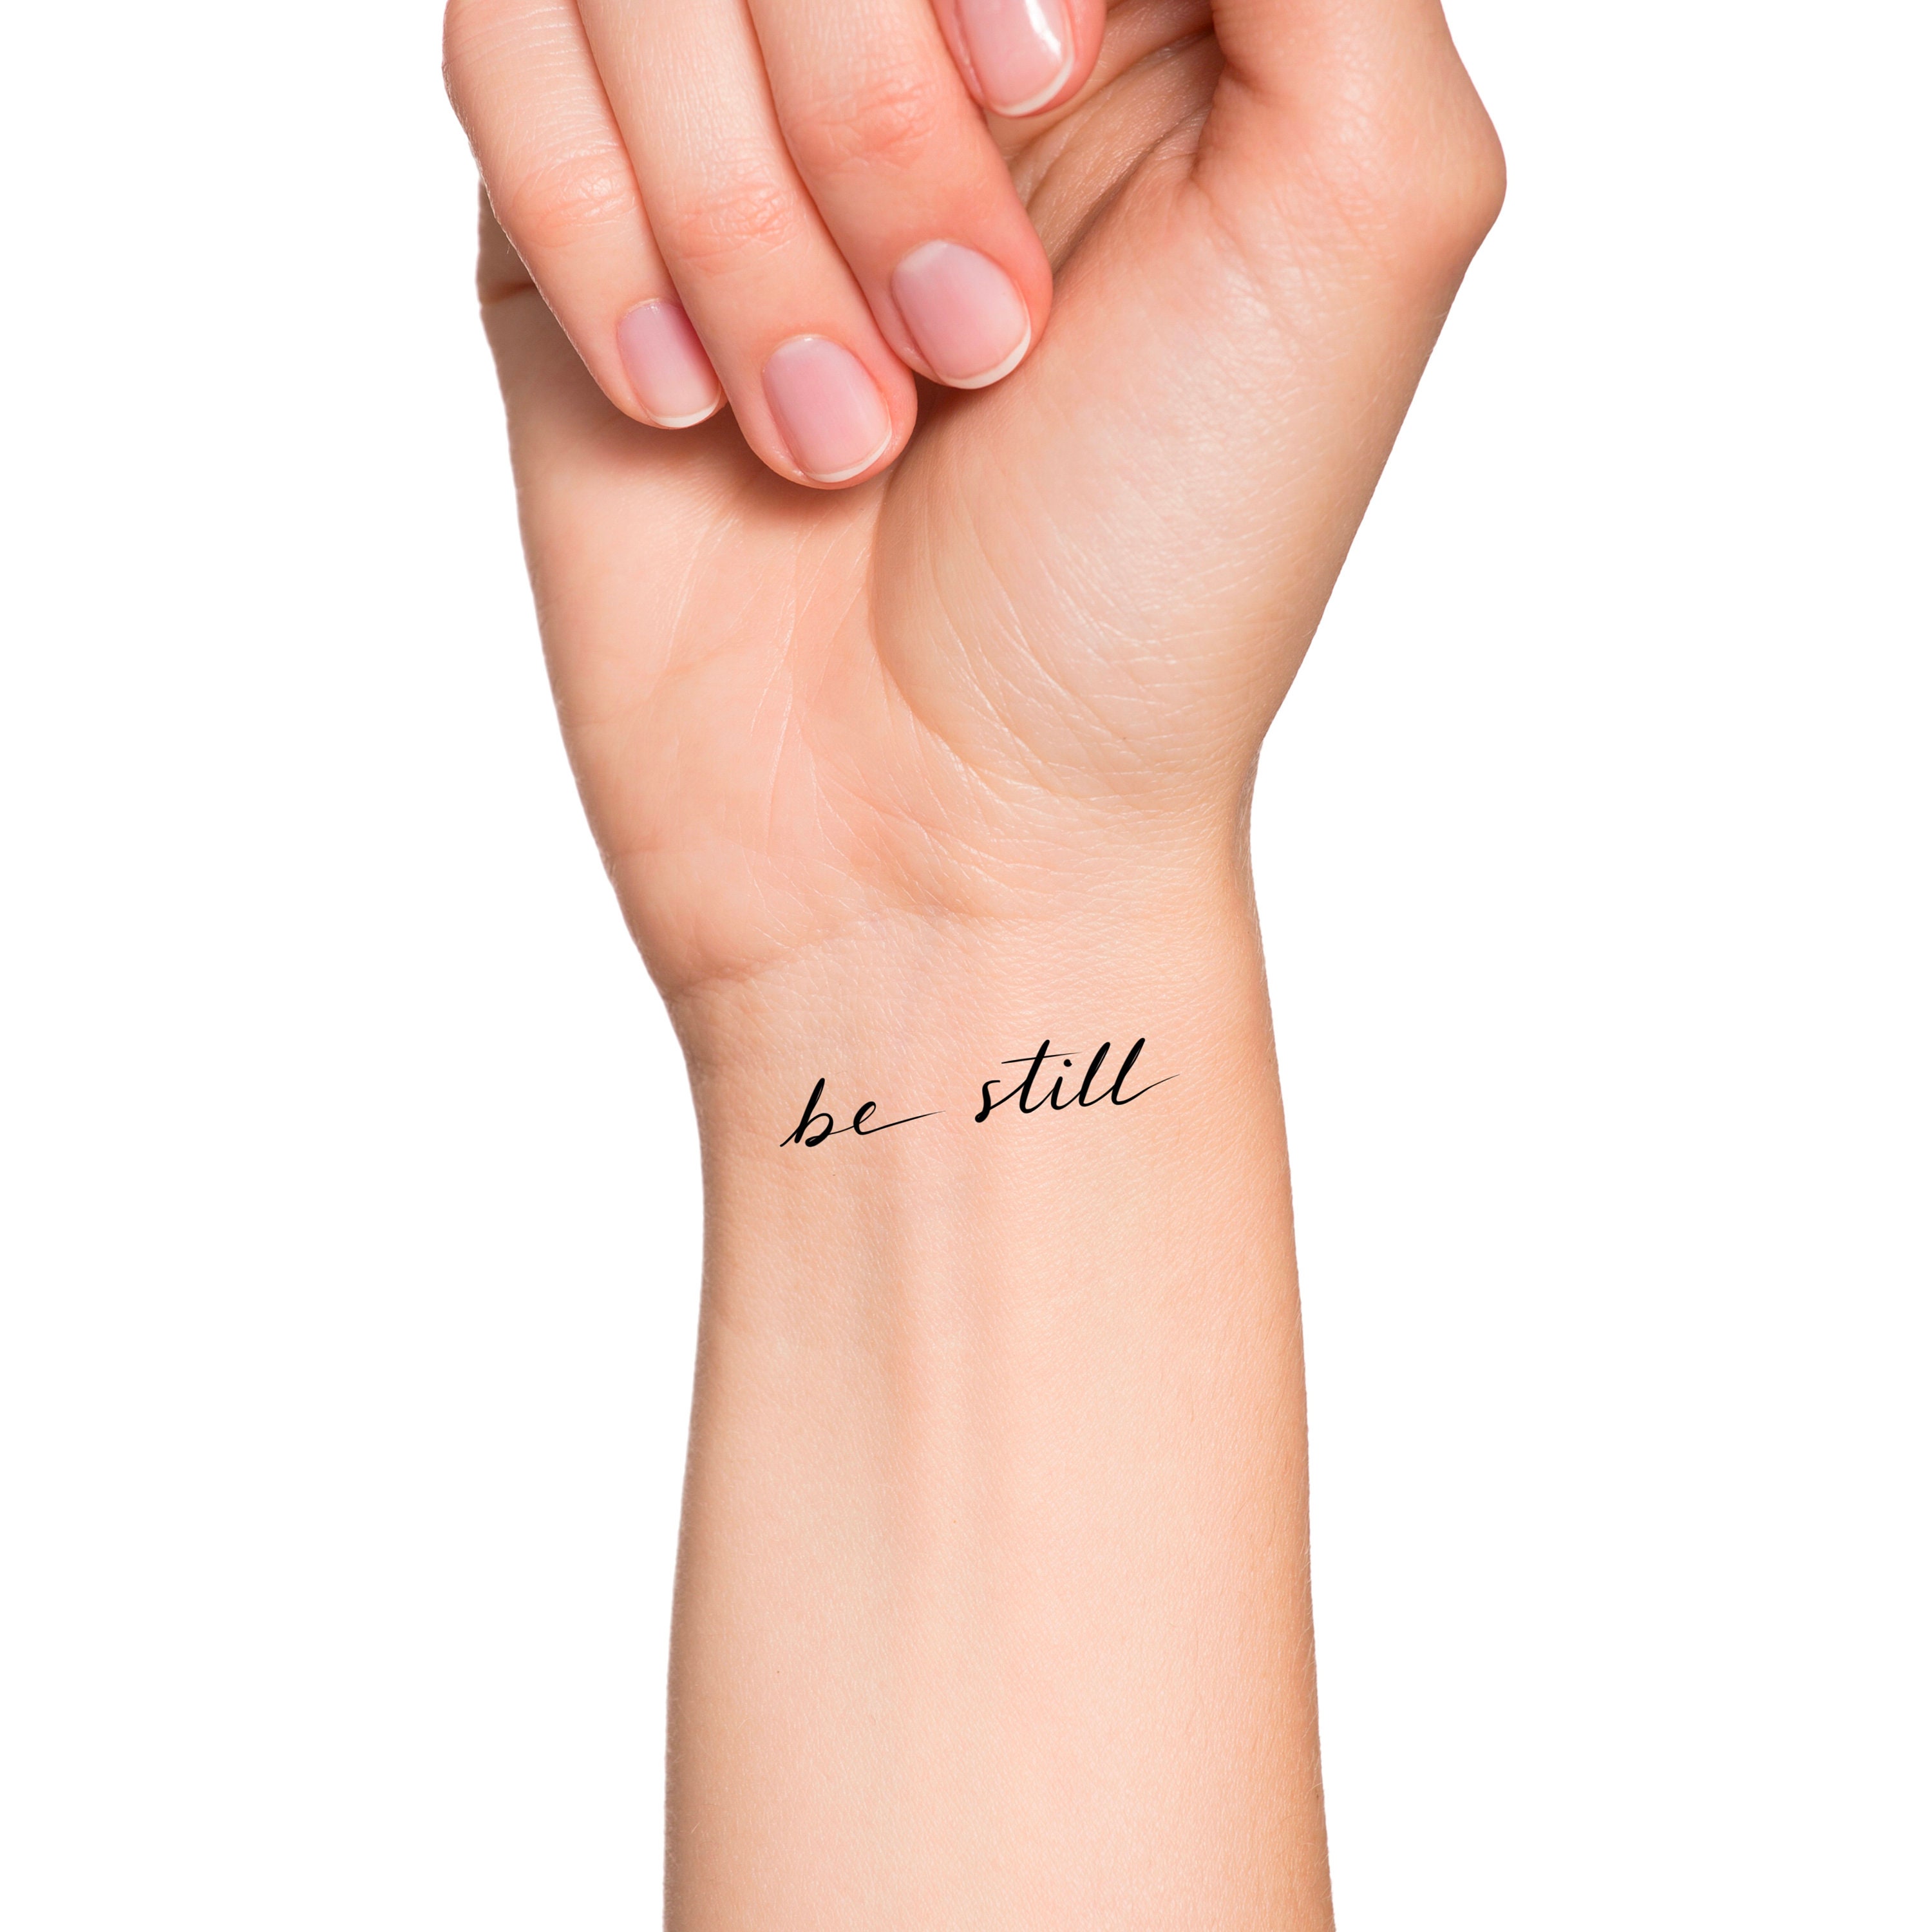 Be Still Tattoo by NikkiFirestarter on DeviantArt